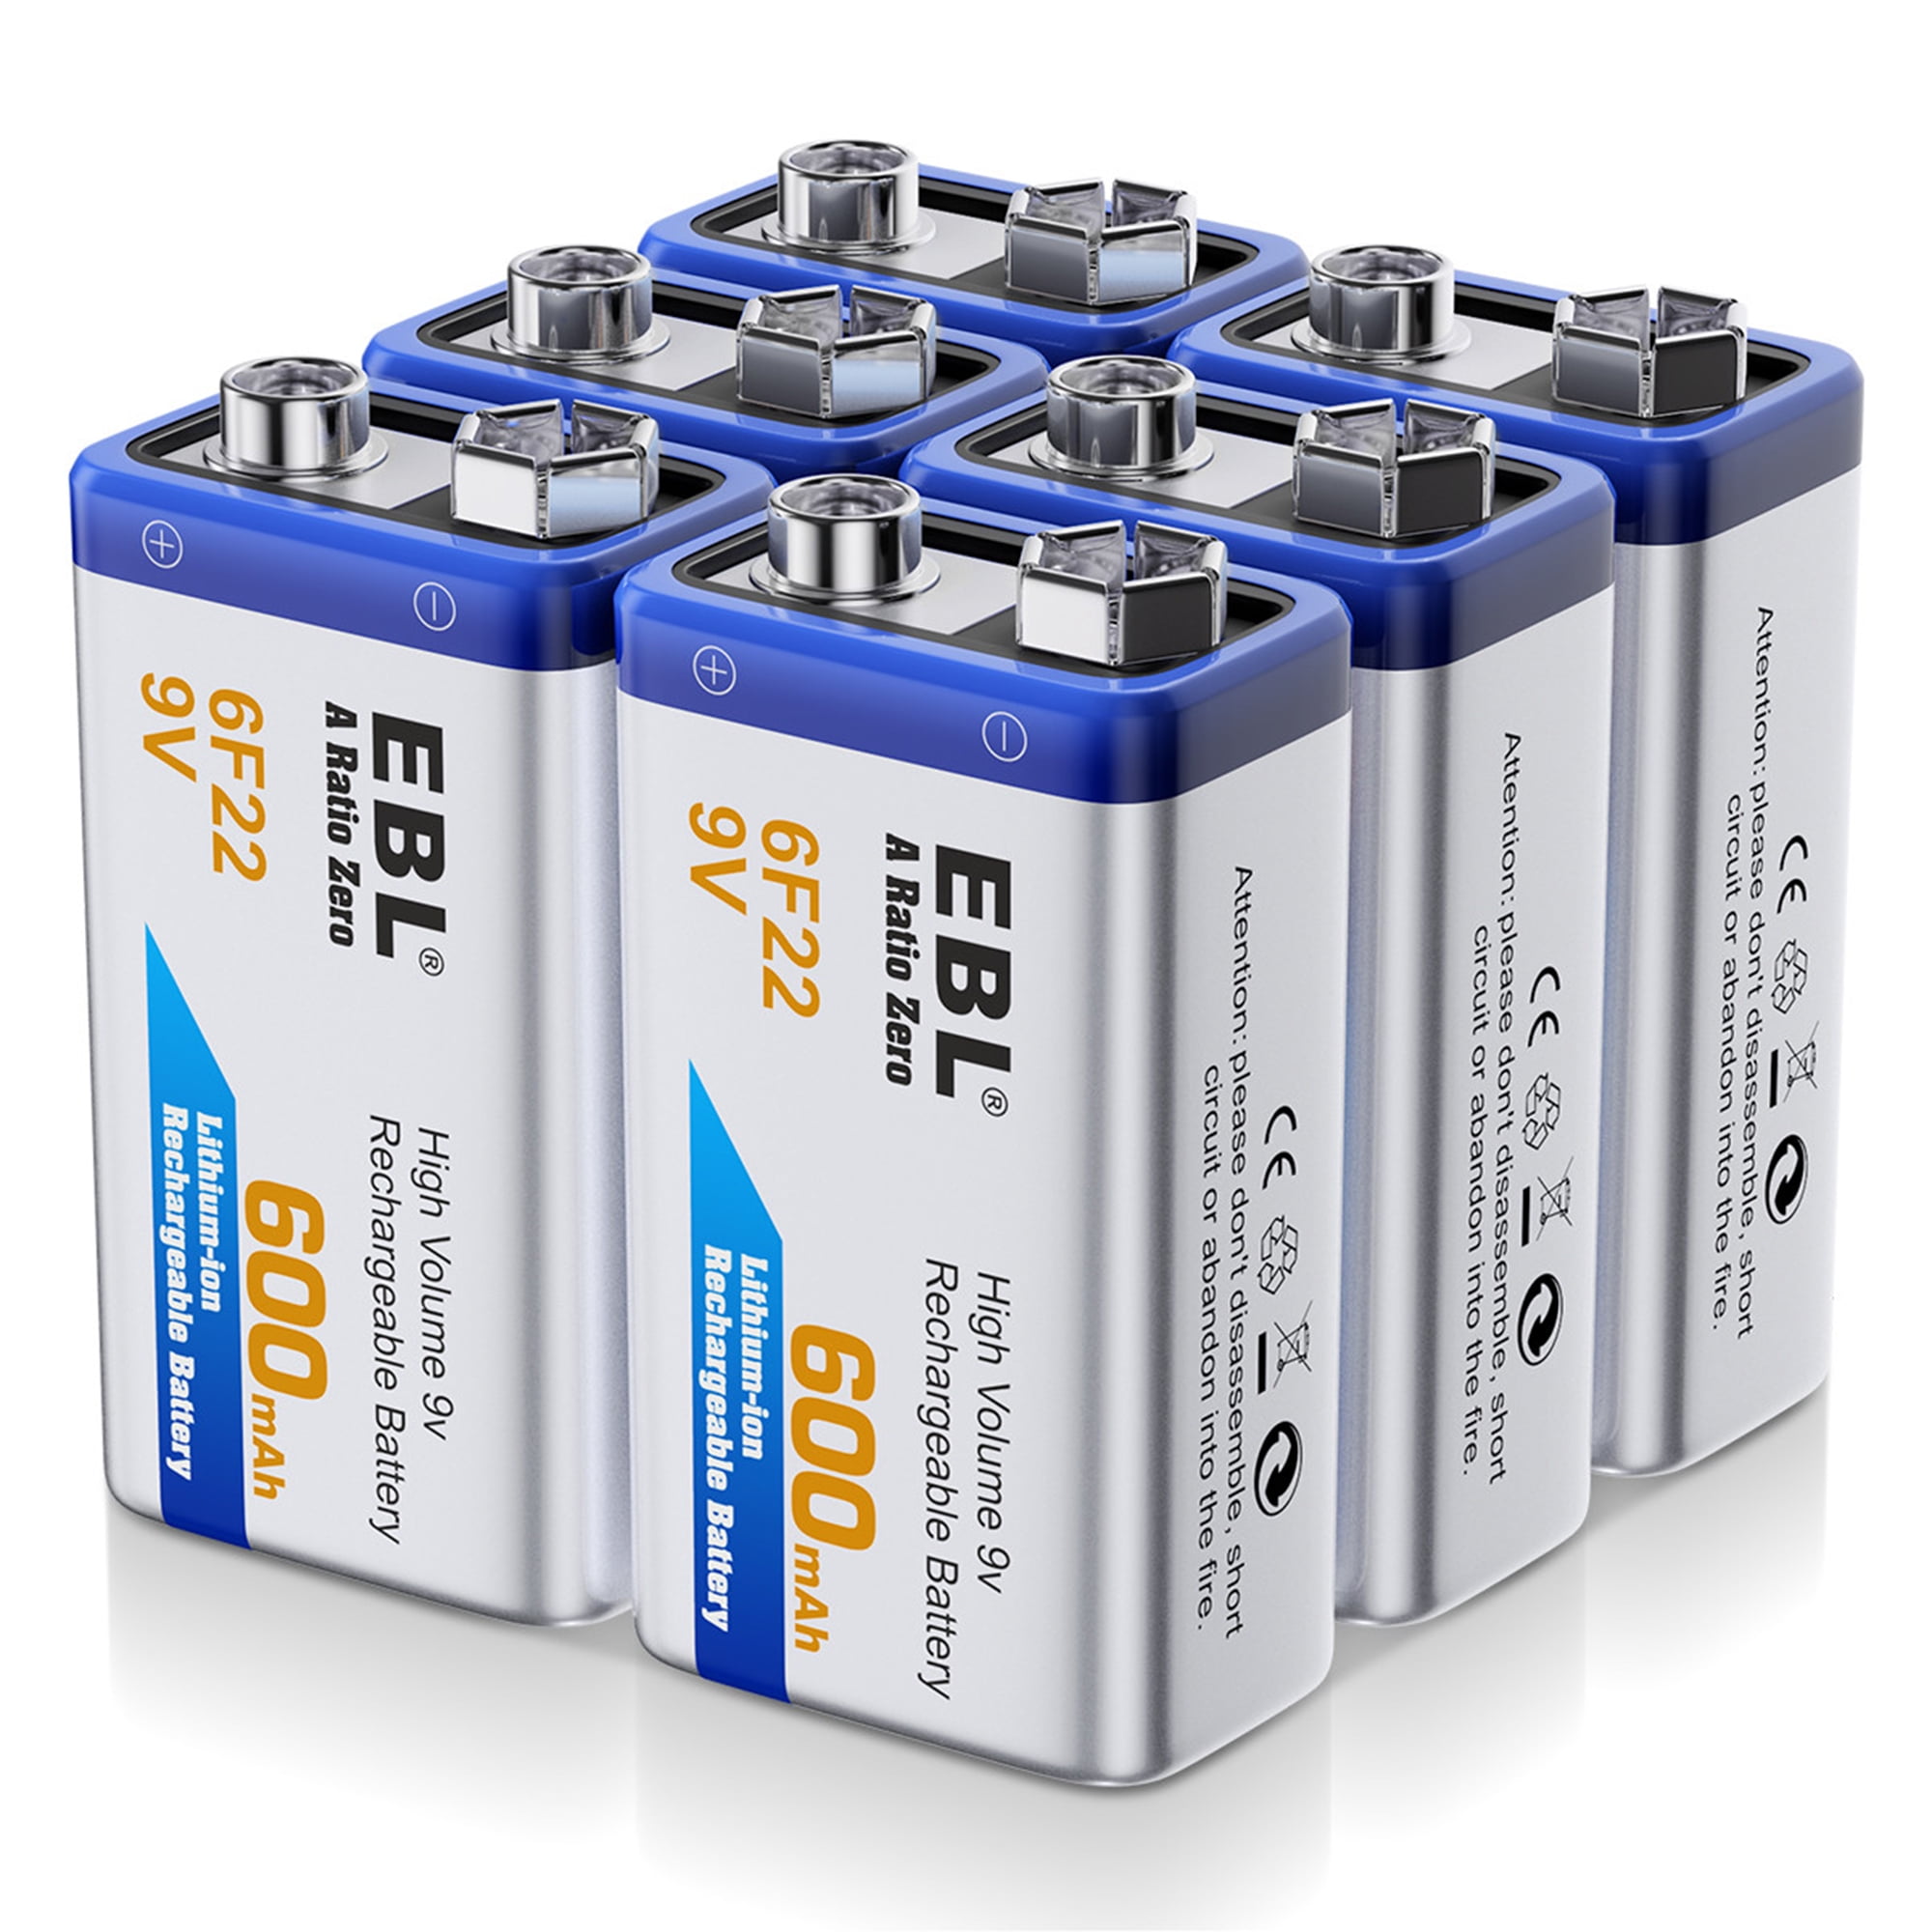 ebl-6-pack-600mah-9v-li-ion-rechargeable-batteries-9-volt-lithium-ion